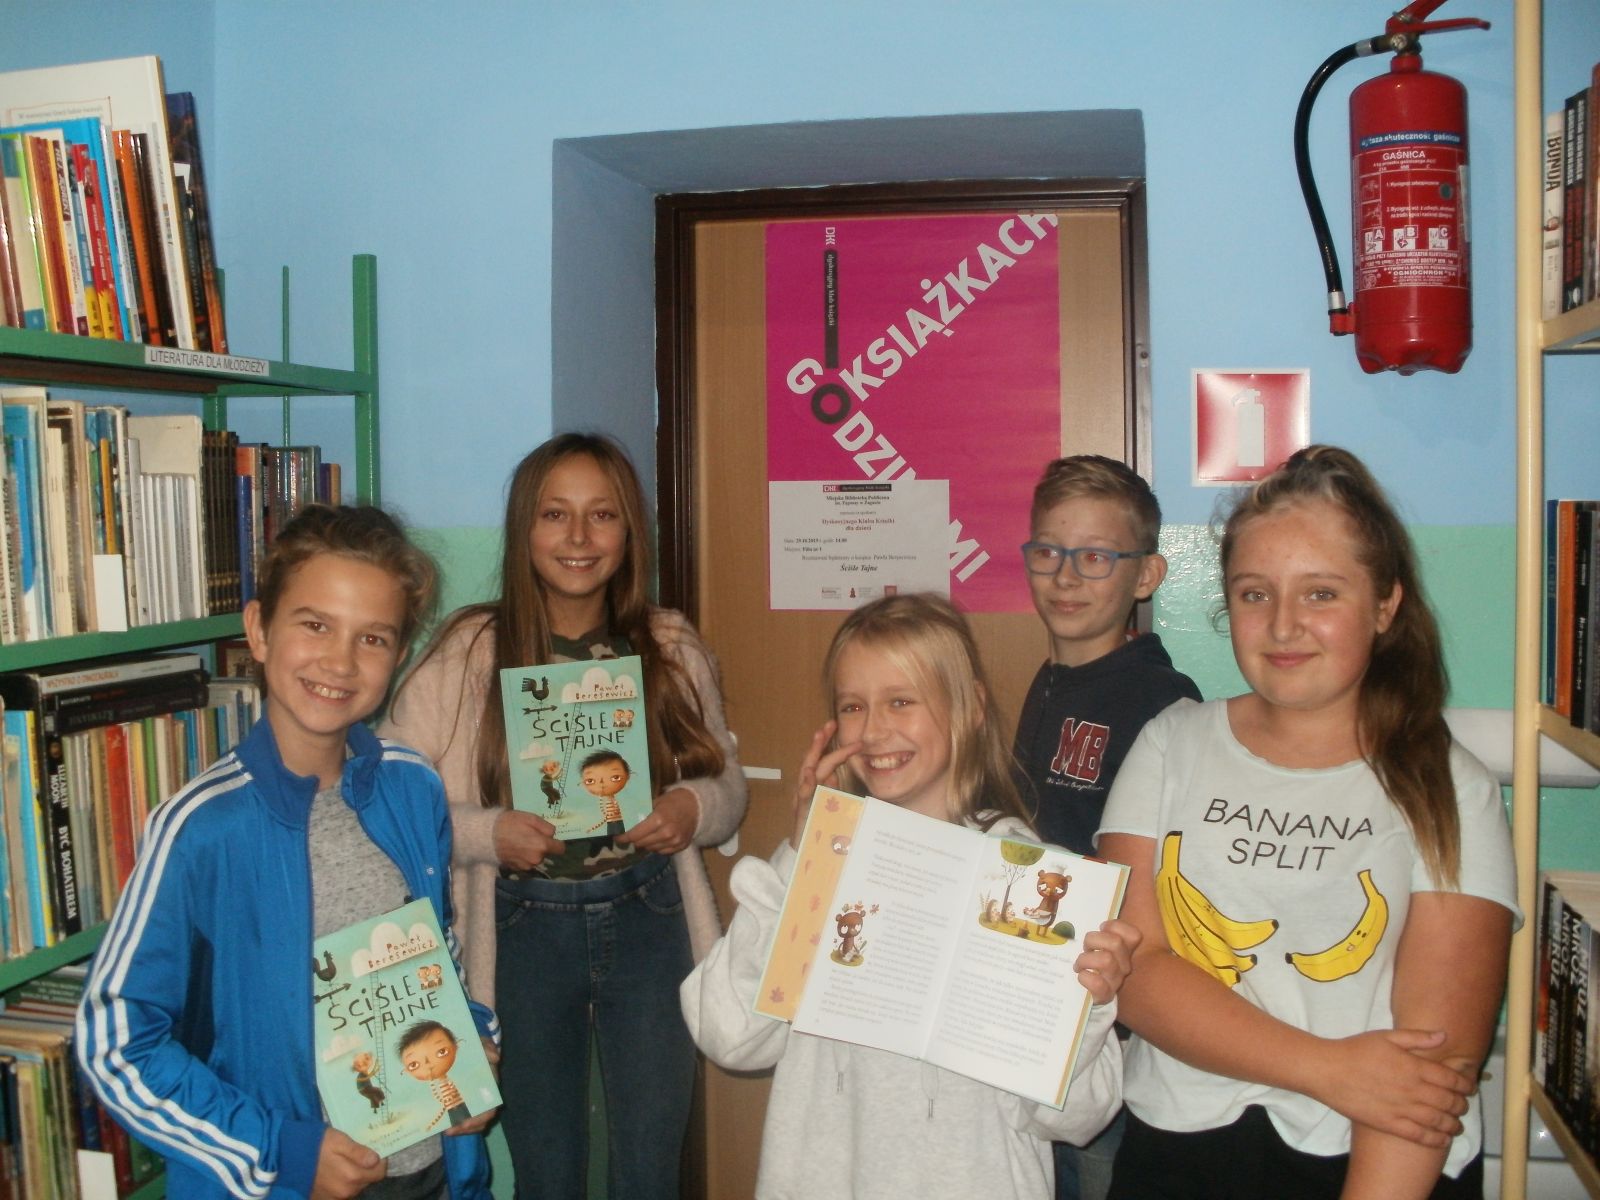 Zdjęcie. Pięcioro wesoło uśmiechniętych dzieci pozuje z przeczytaną książką na tle plakatu DKK Godzinami o książkach. W tle regały biblioteczne z książkami.